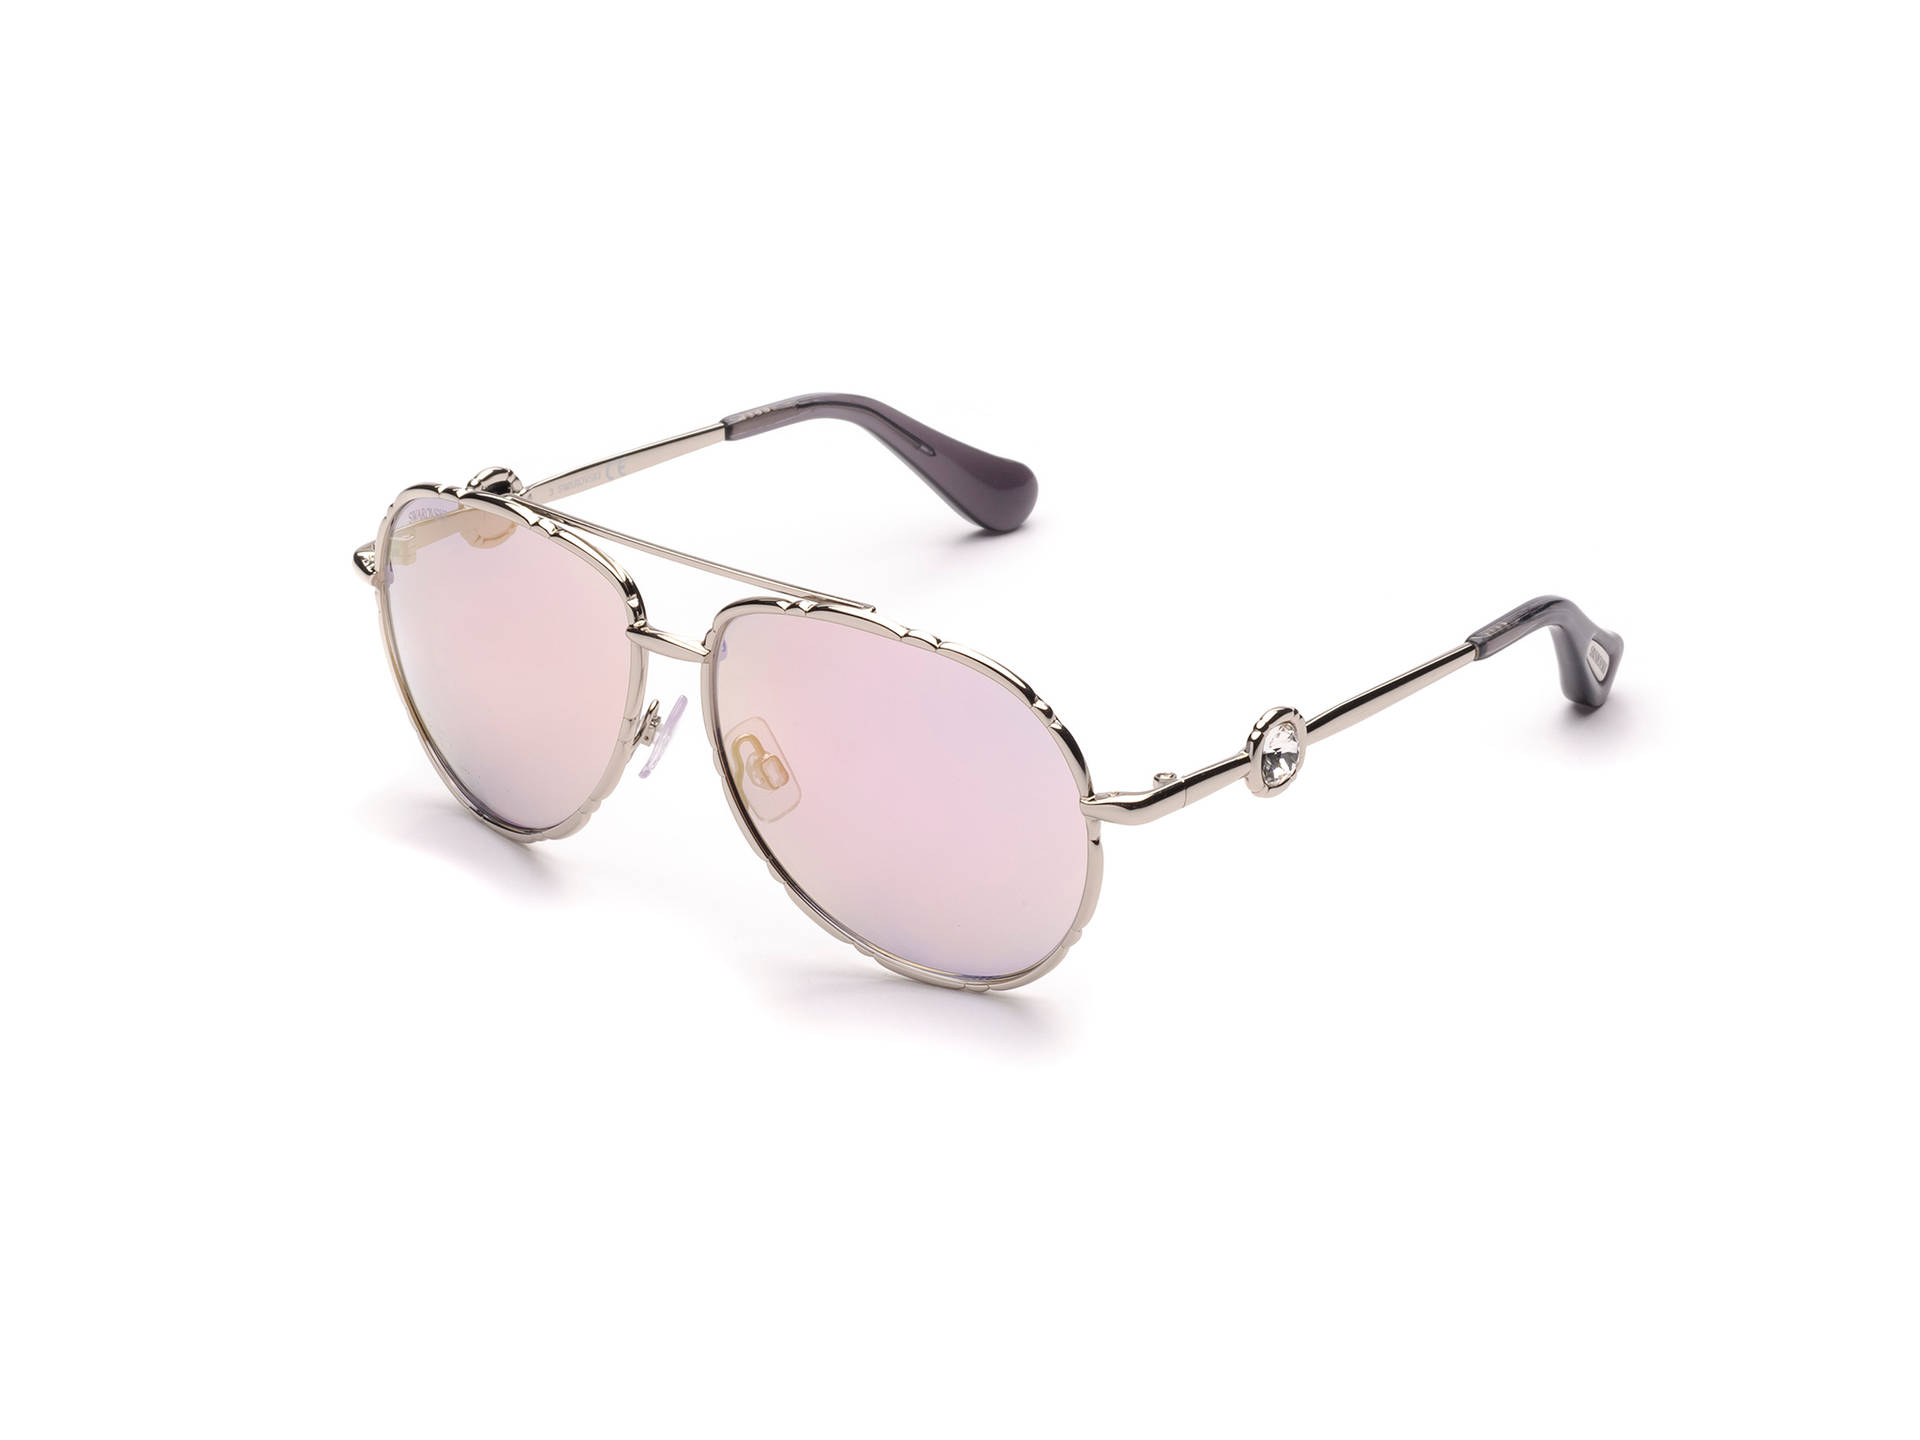 Swarovski Sunglasses Light Pink Lenses Wallpaper